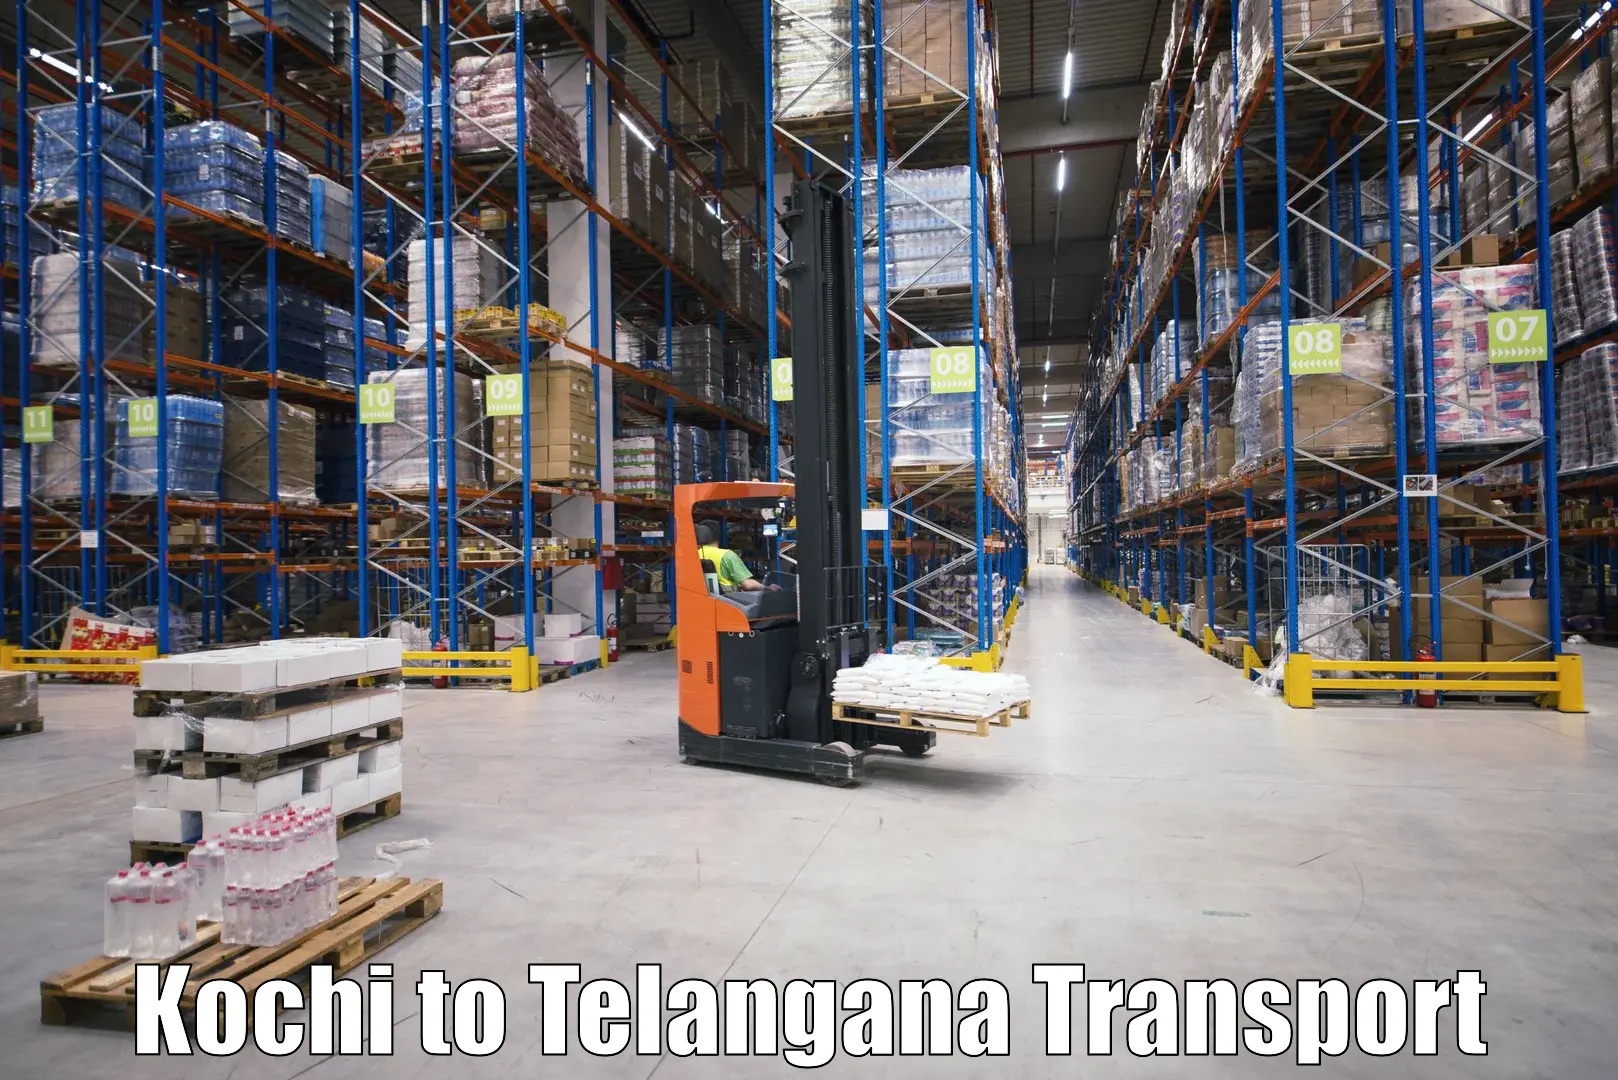 Cargo transportation services Kochi to Thungathurthi